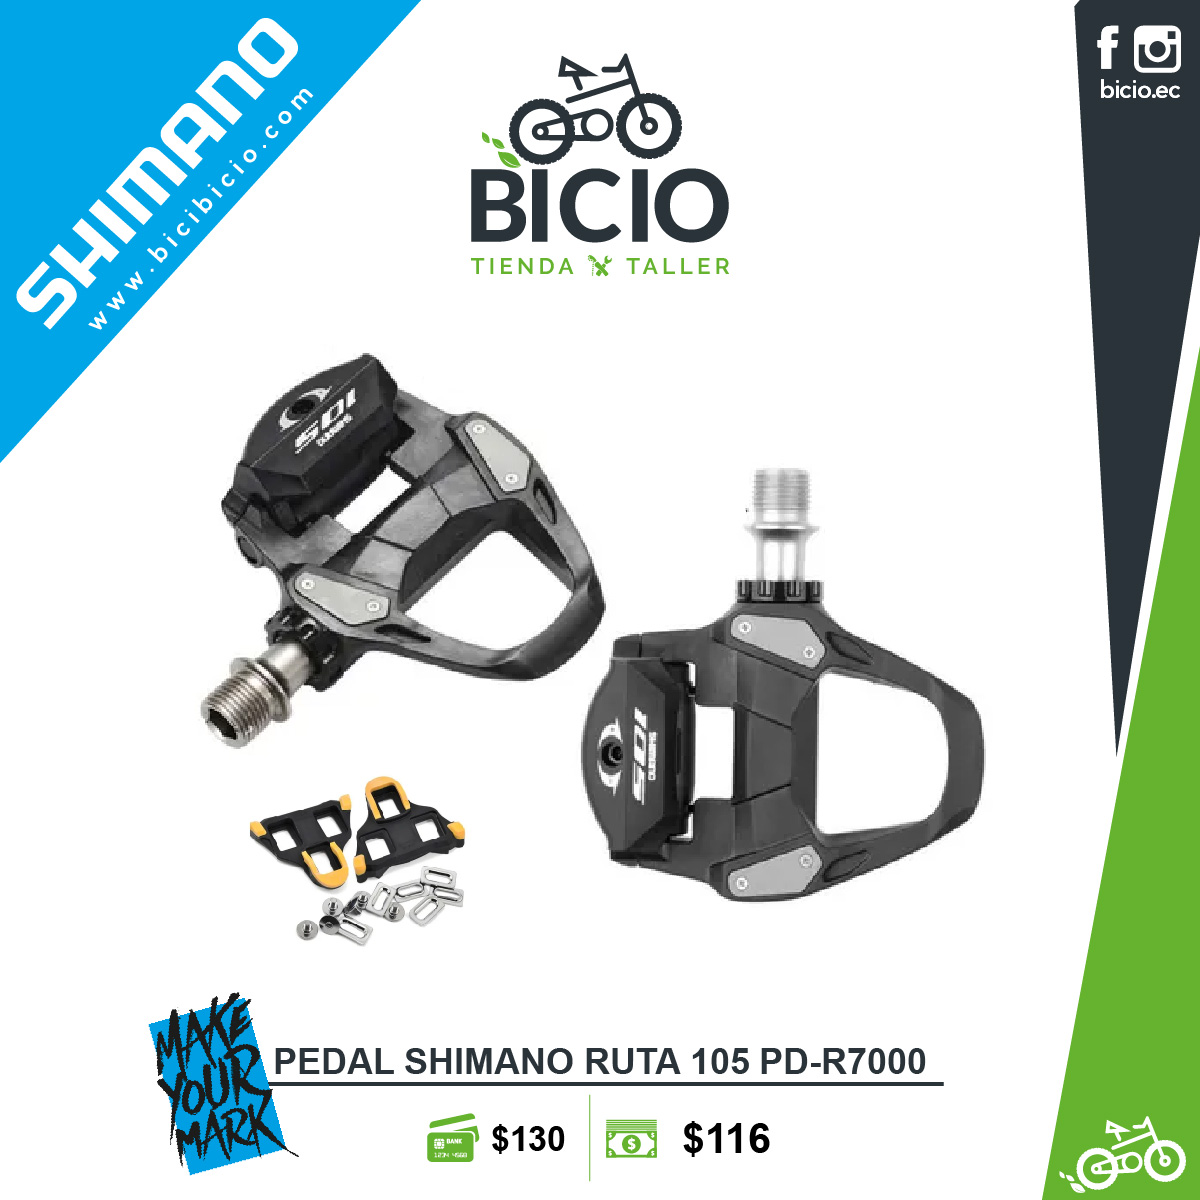 Pedal Shimano 105 PD-R7000 - Bicio tienda - taller de bicicletas